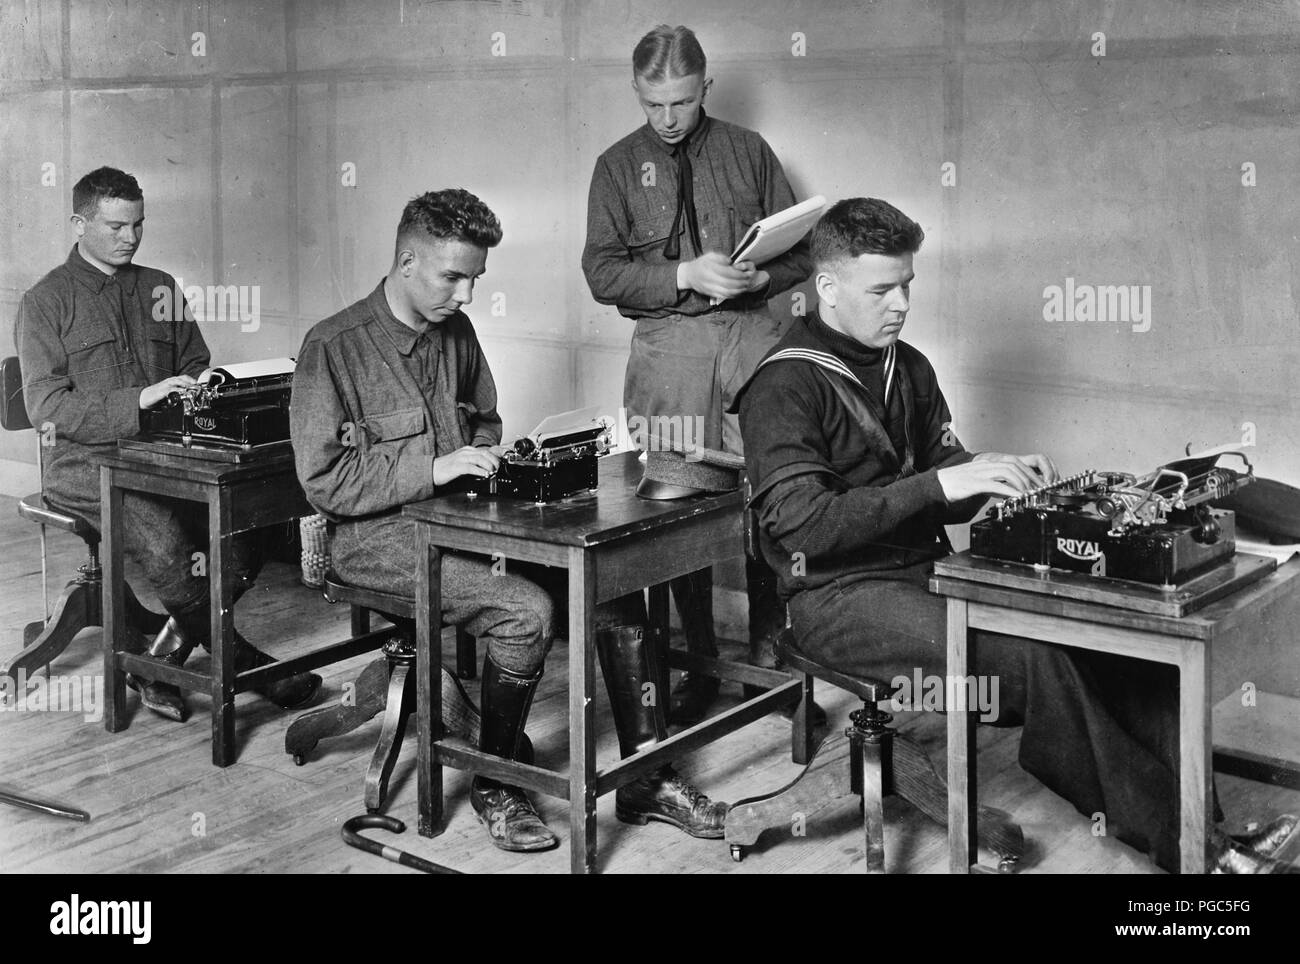 Maschinenschreiben. Der Blinde kann jede Schreibmaschine verwenden, keine speziellen Geräte nötig sind. Wenn die so genannten "Touch system' zu schreiben, die Menschen, die Sehen nicht auf die Tasten zu schauen, ist es genauso gut für diejenigen, die nicht auf der Tastatur sehen. Baltimore, Maryland. 1918 Stockfoto